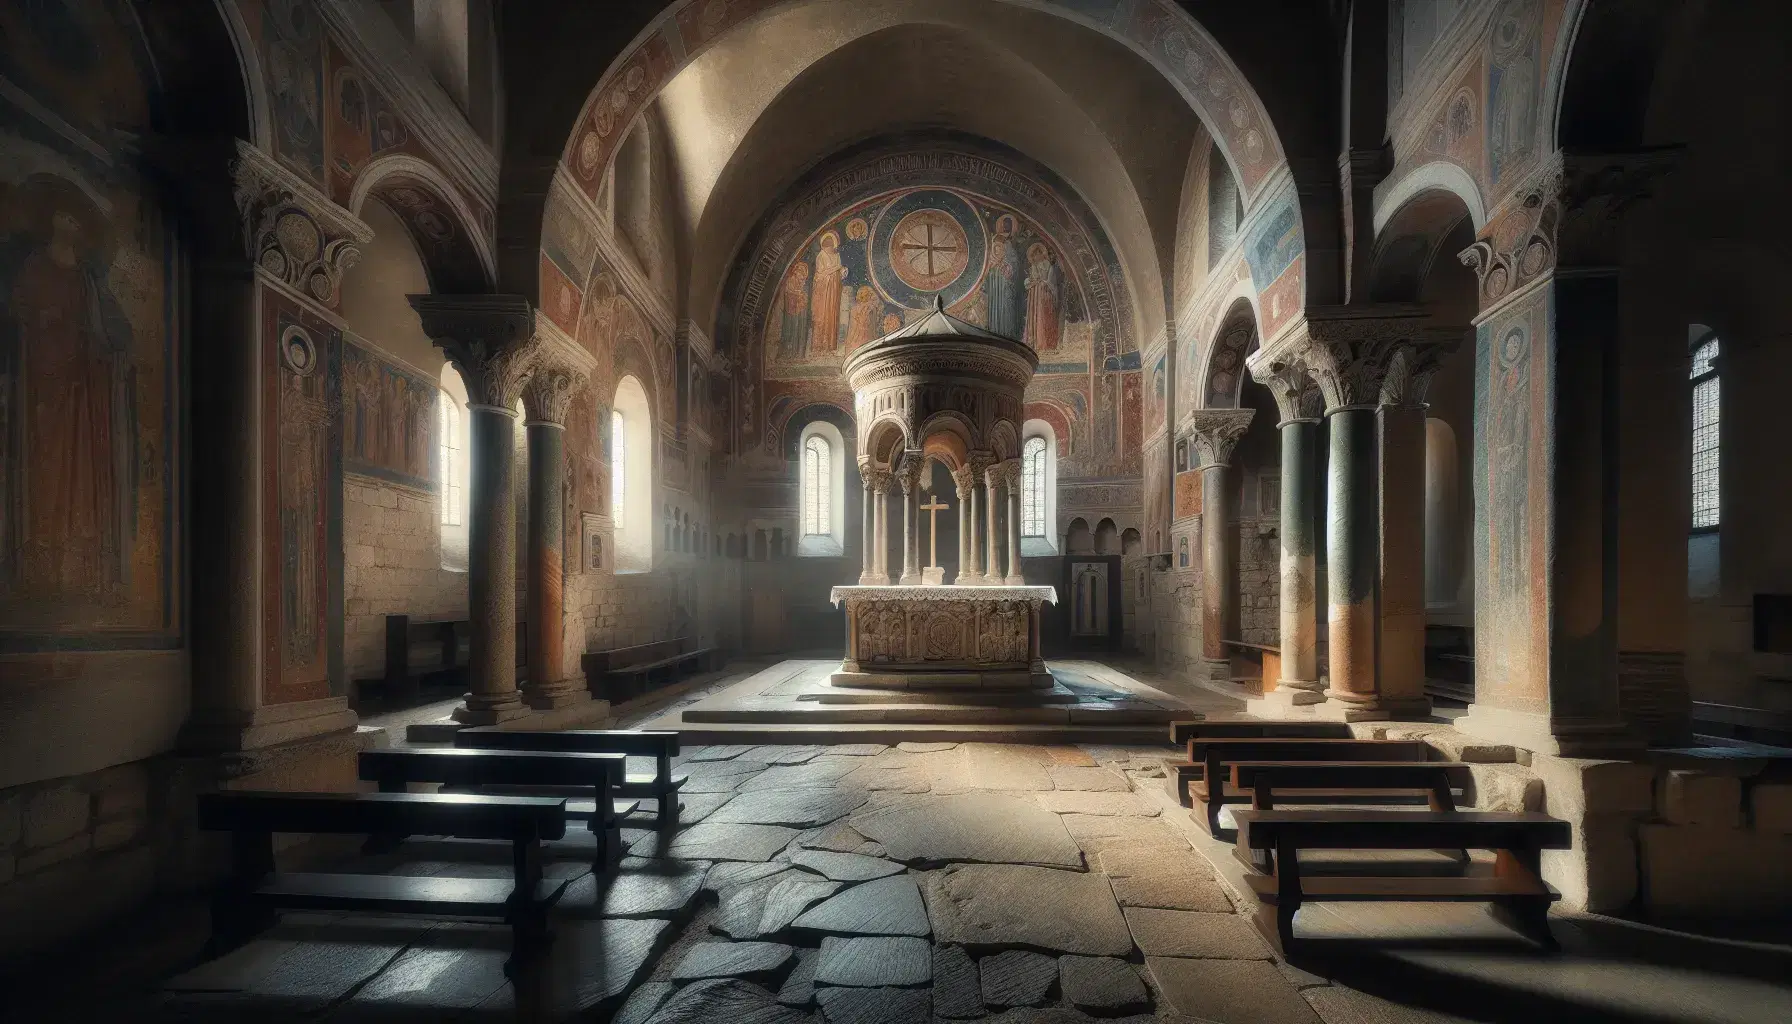 Interno di chiesa lombarda con altare in pietra, ciborio su colonne scolpite, affreschi sbiaditi e pavimento in lastroni.